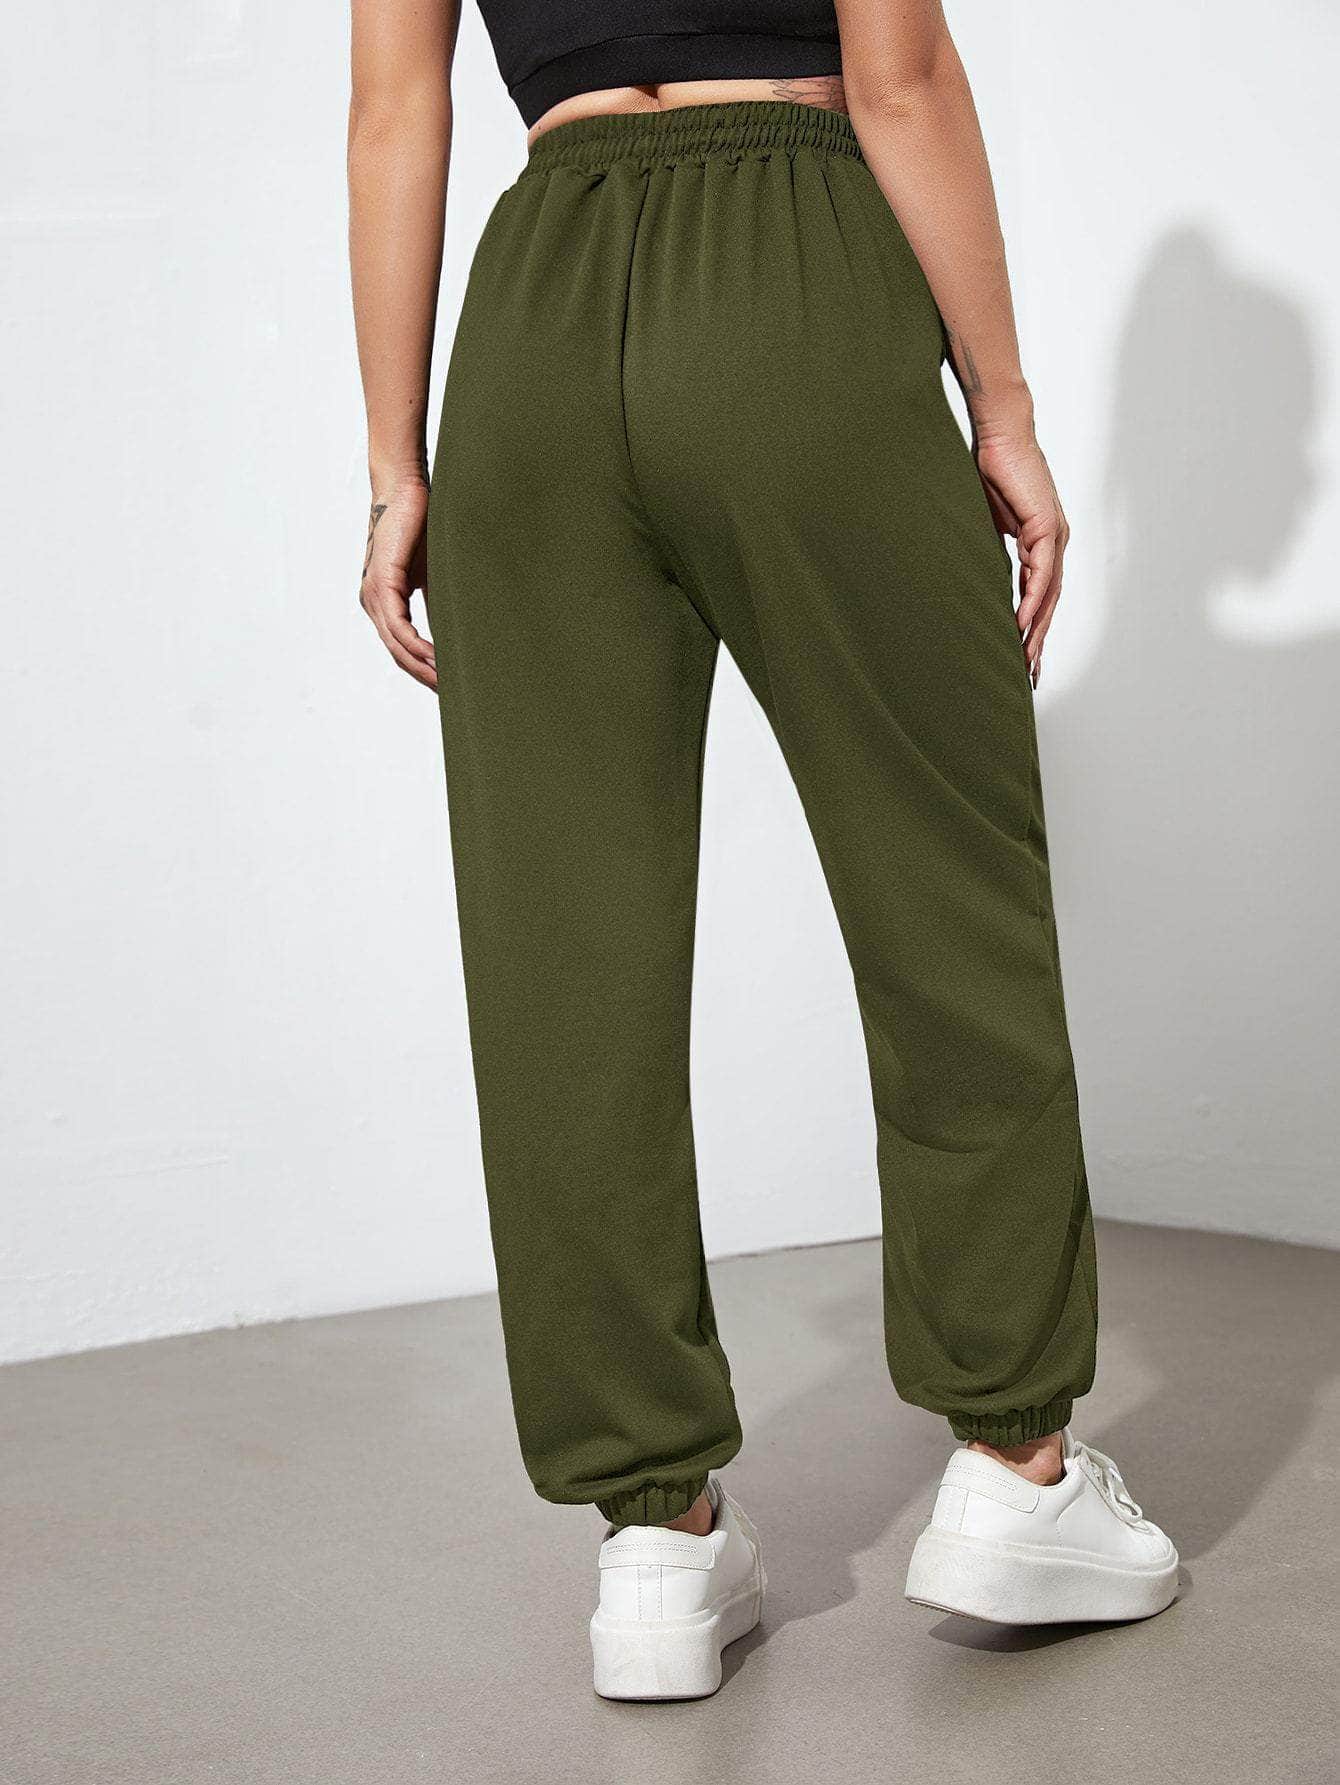 Verde militar / M Pantalones deportivos con cordón con bolsillos oblicuos unicolor